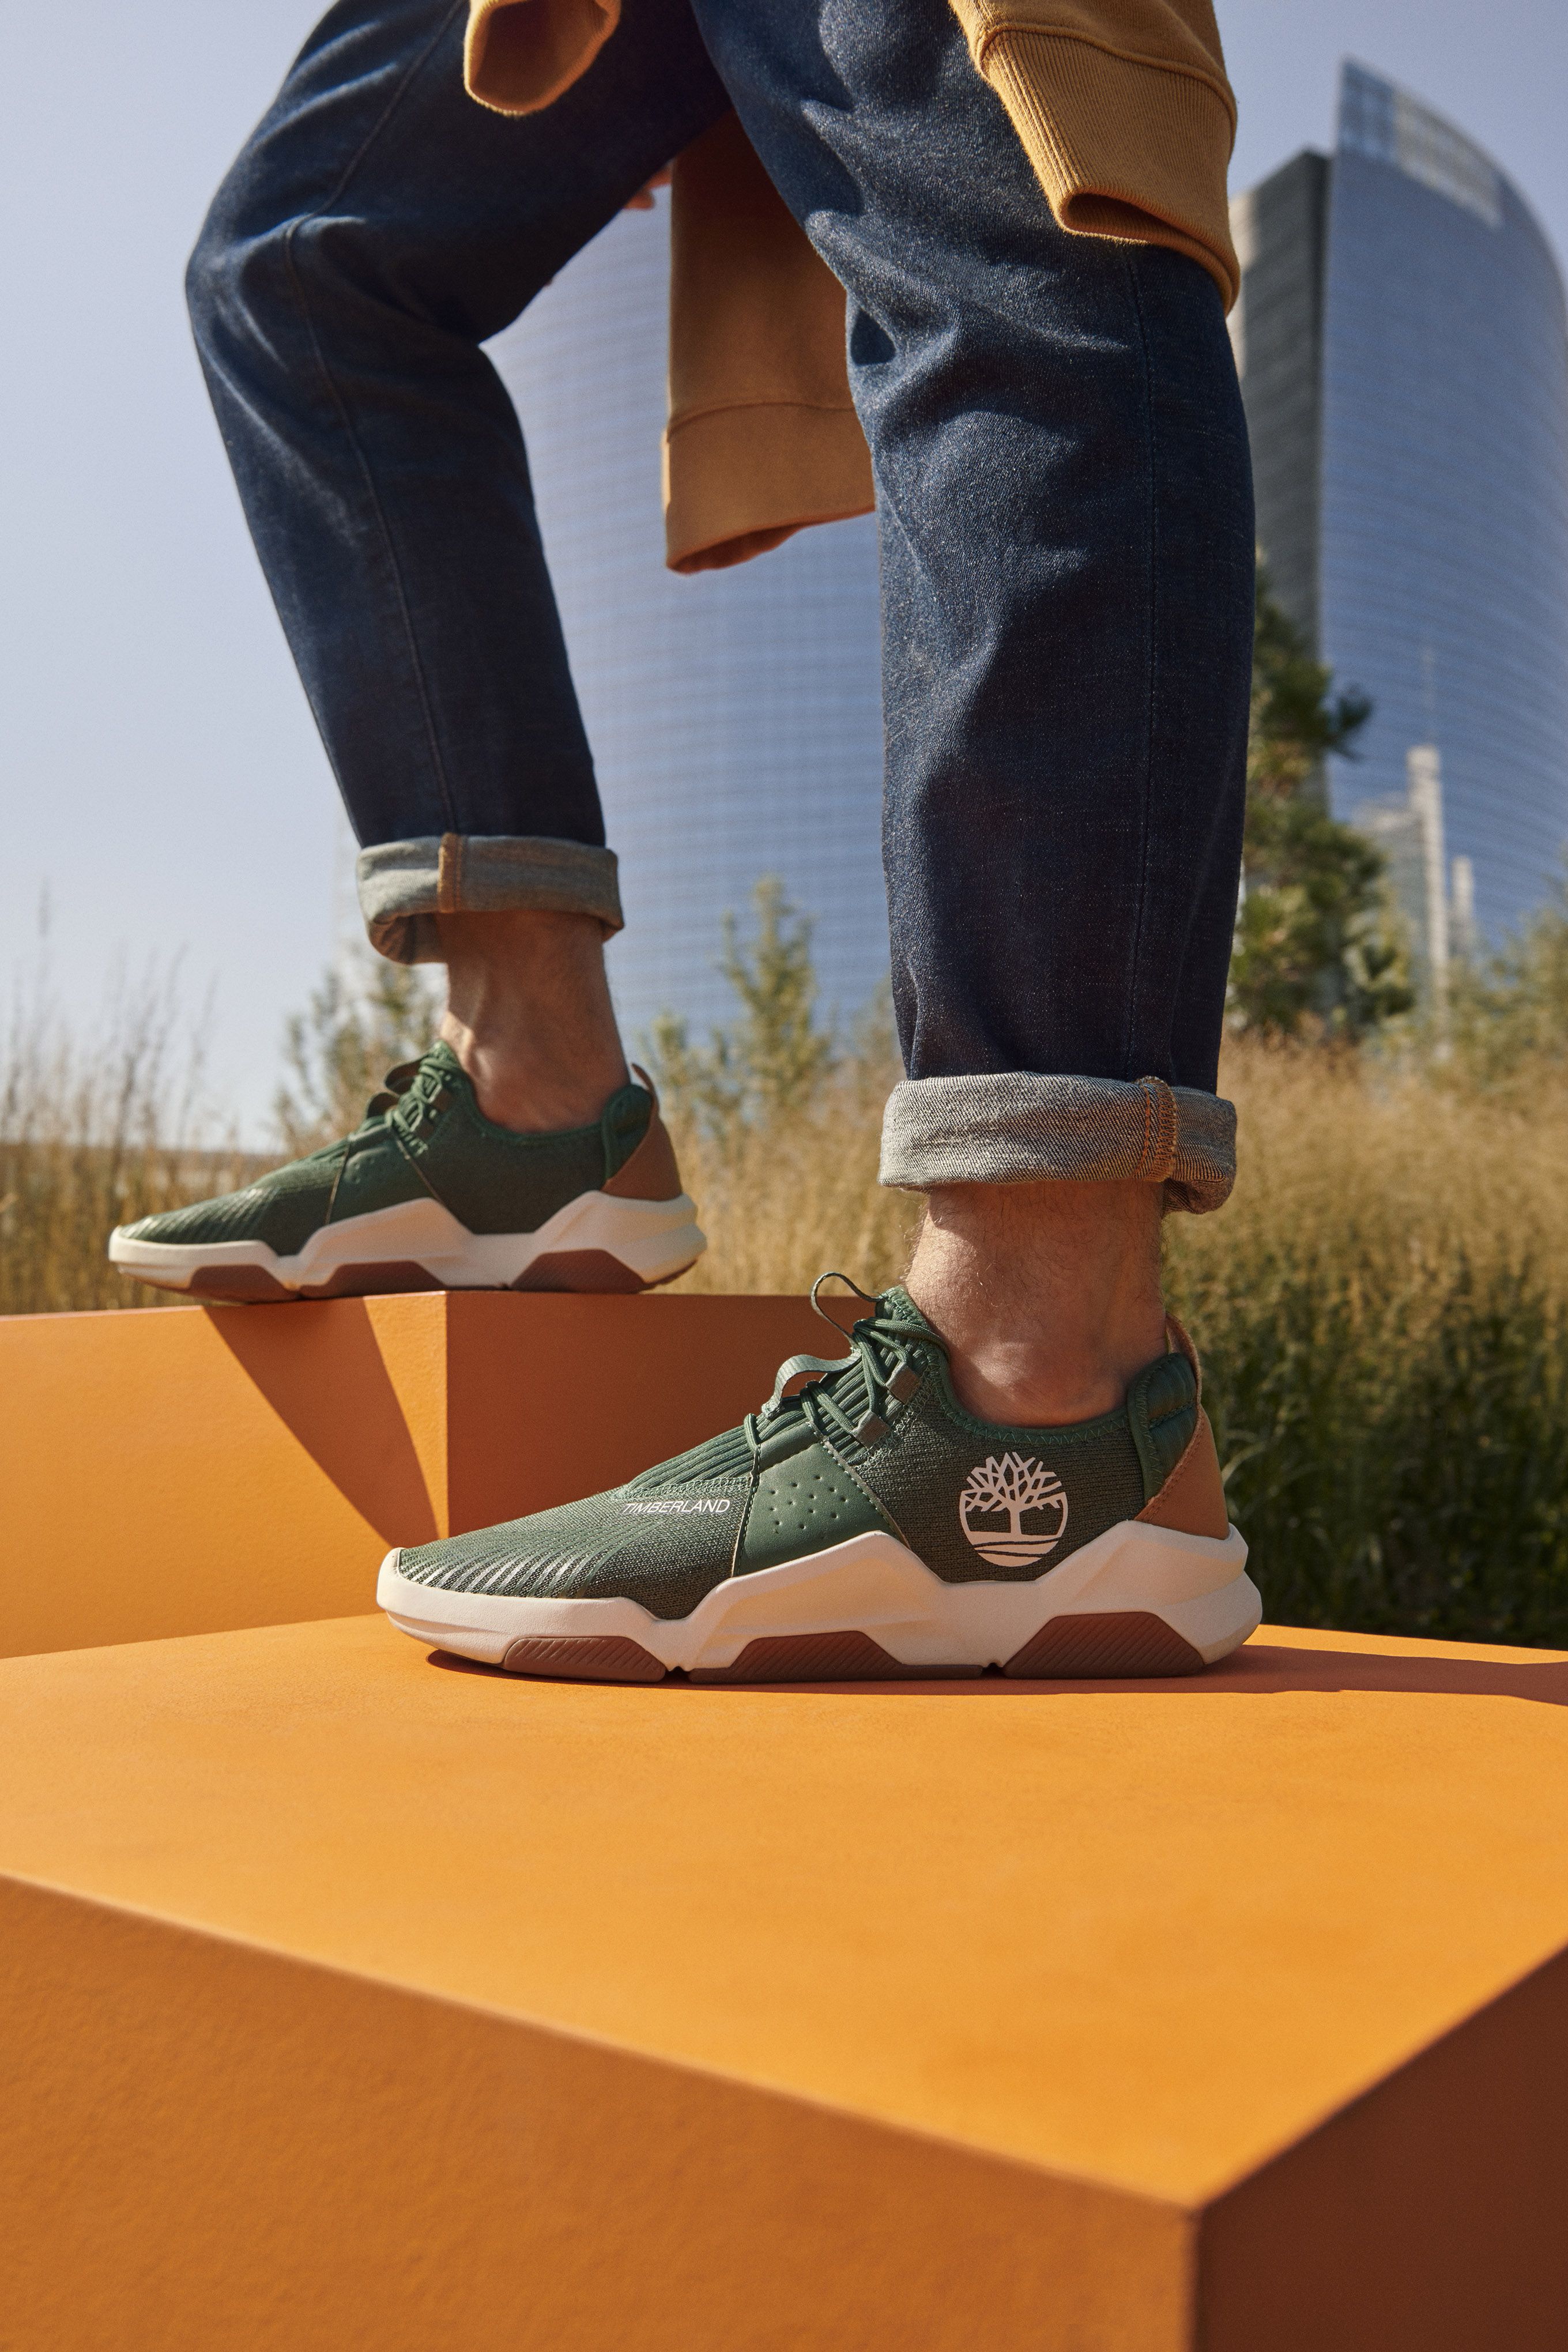 Timberland lanza unas nuevas zapatillas sostenibles de hombre